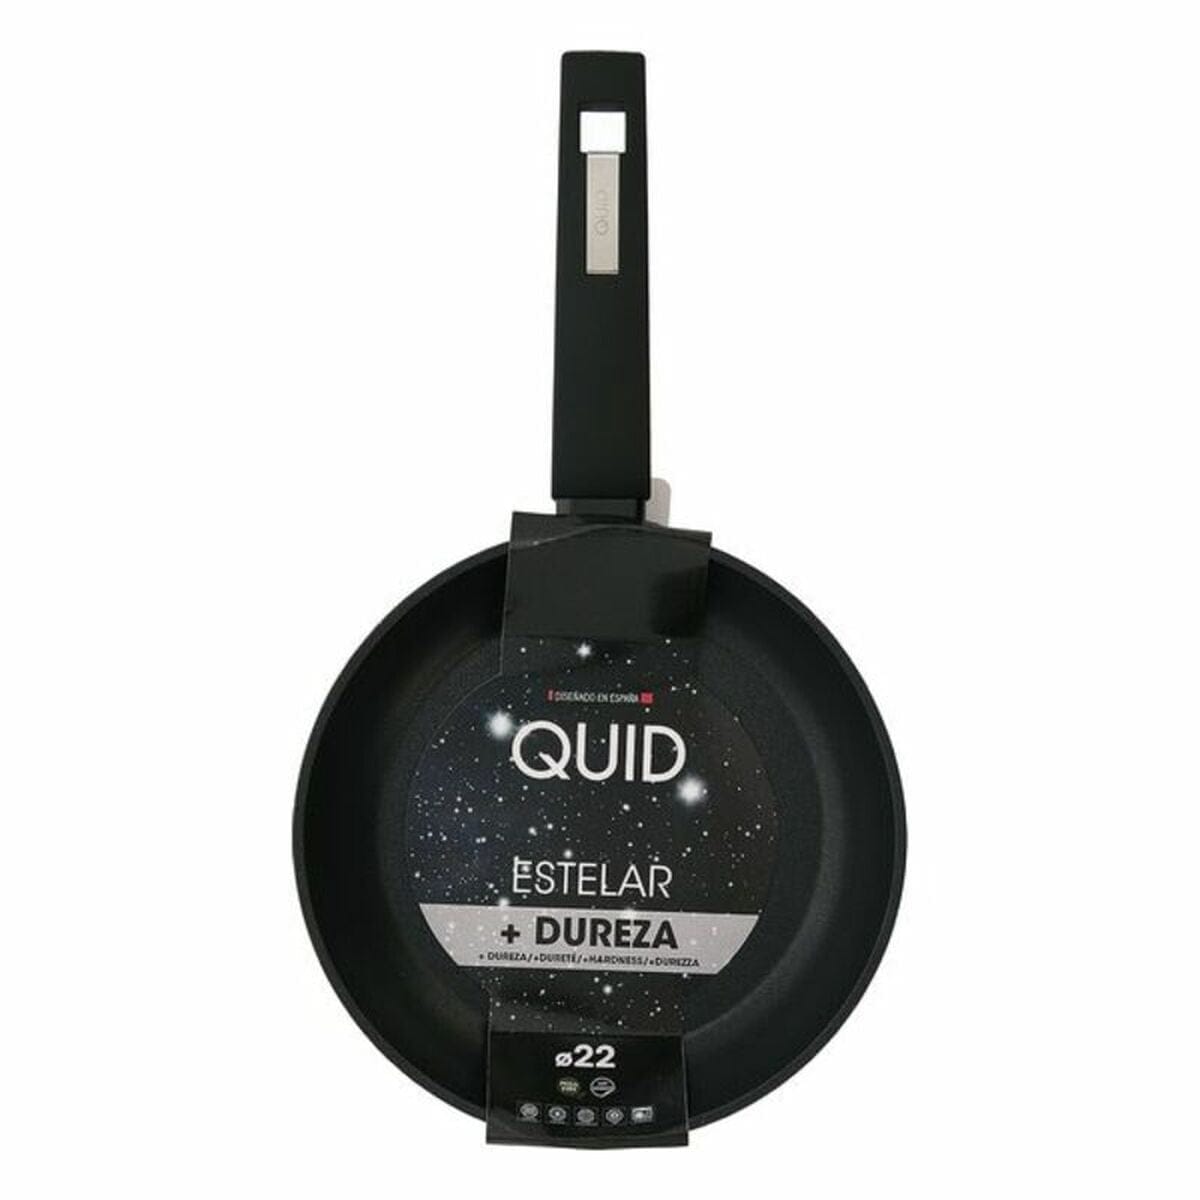 Quid Küche | Gourmet > Haushalt > Pfannen und Töpfe Antihaftbeschichtete Pfanne Quid Estelar Schwarz Metall